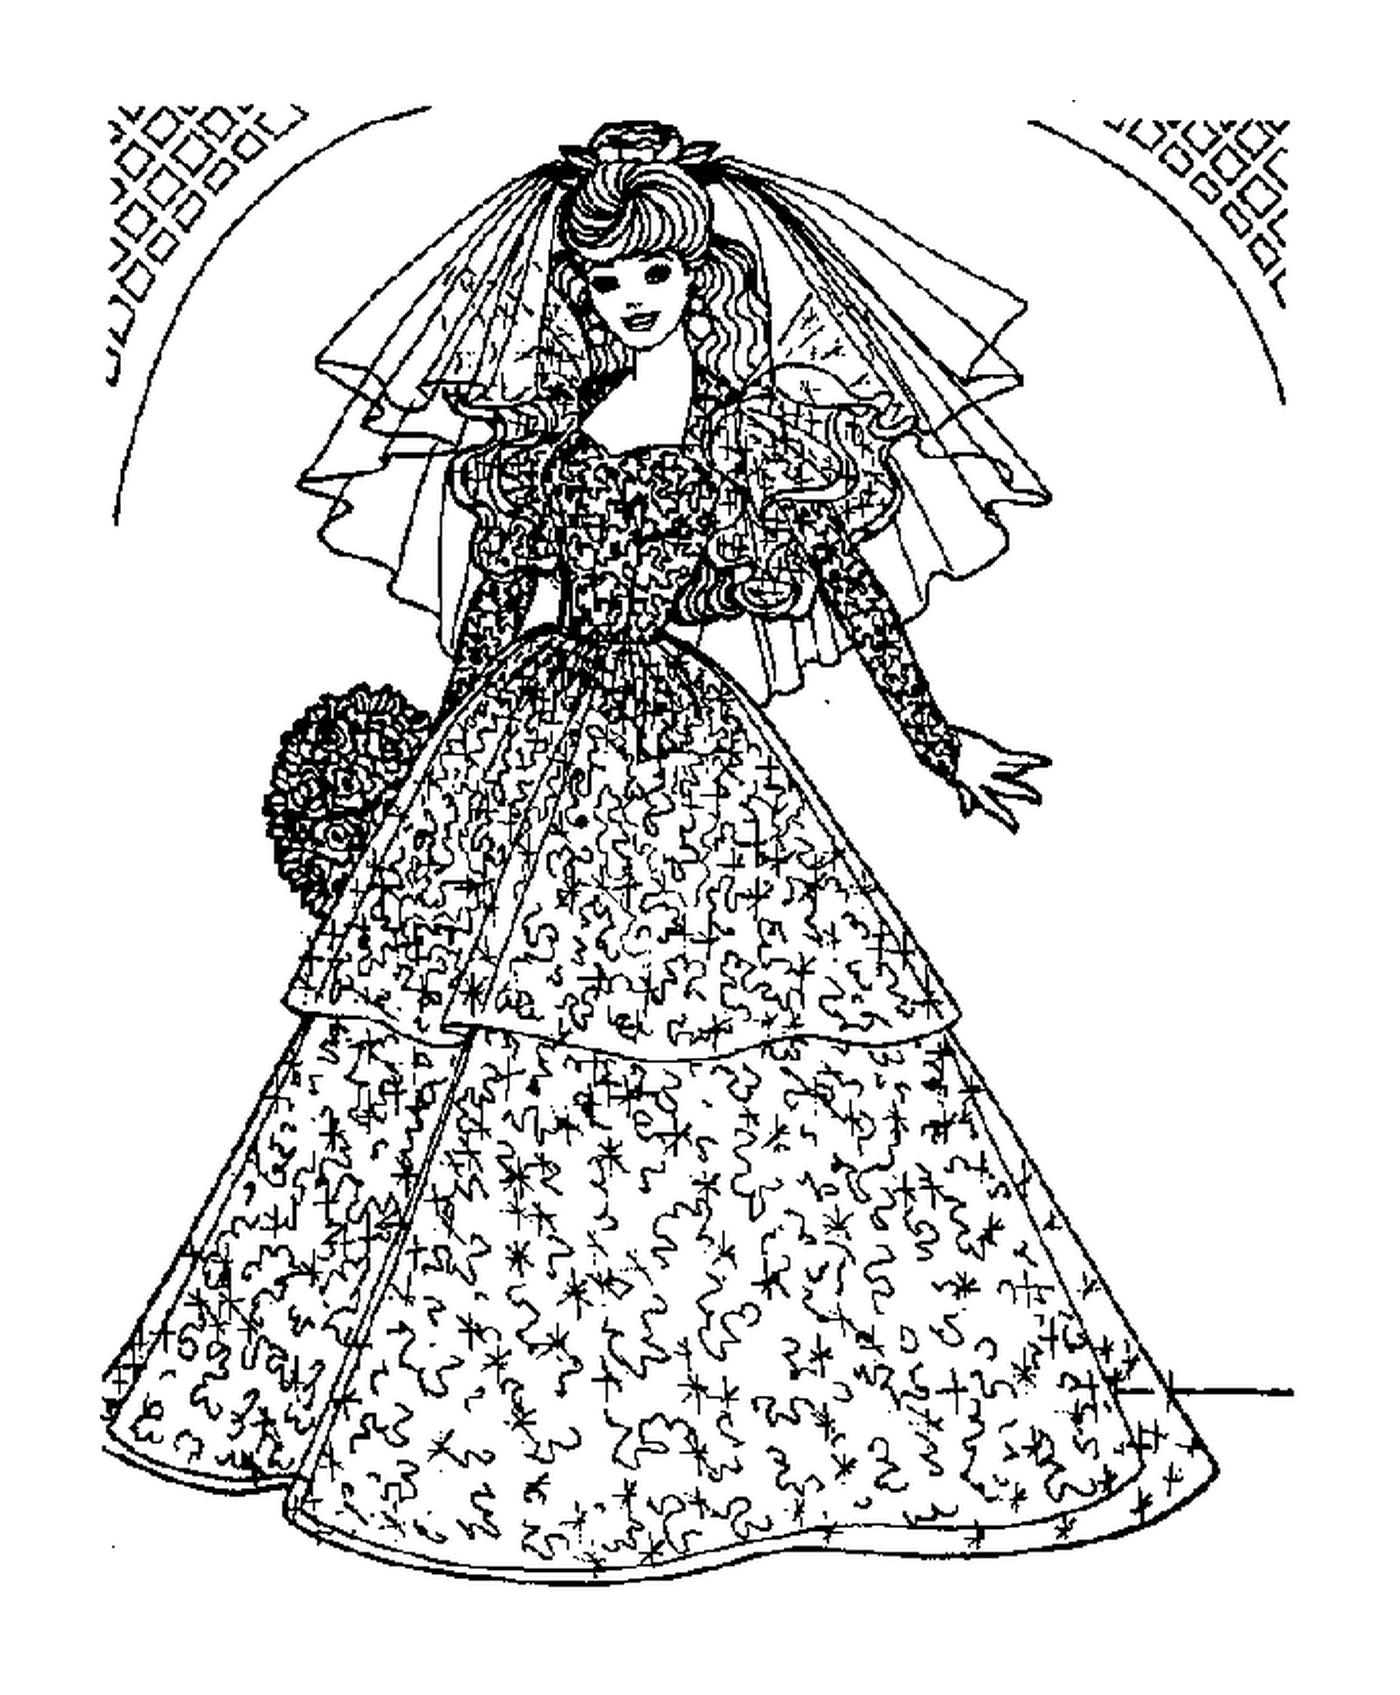  A bride 